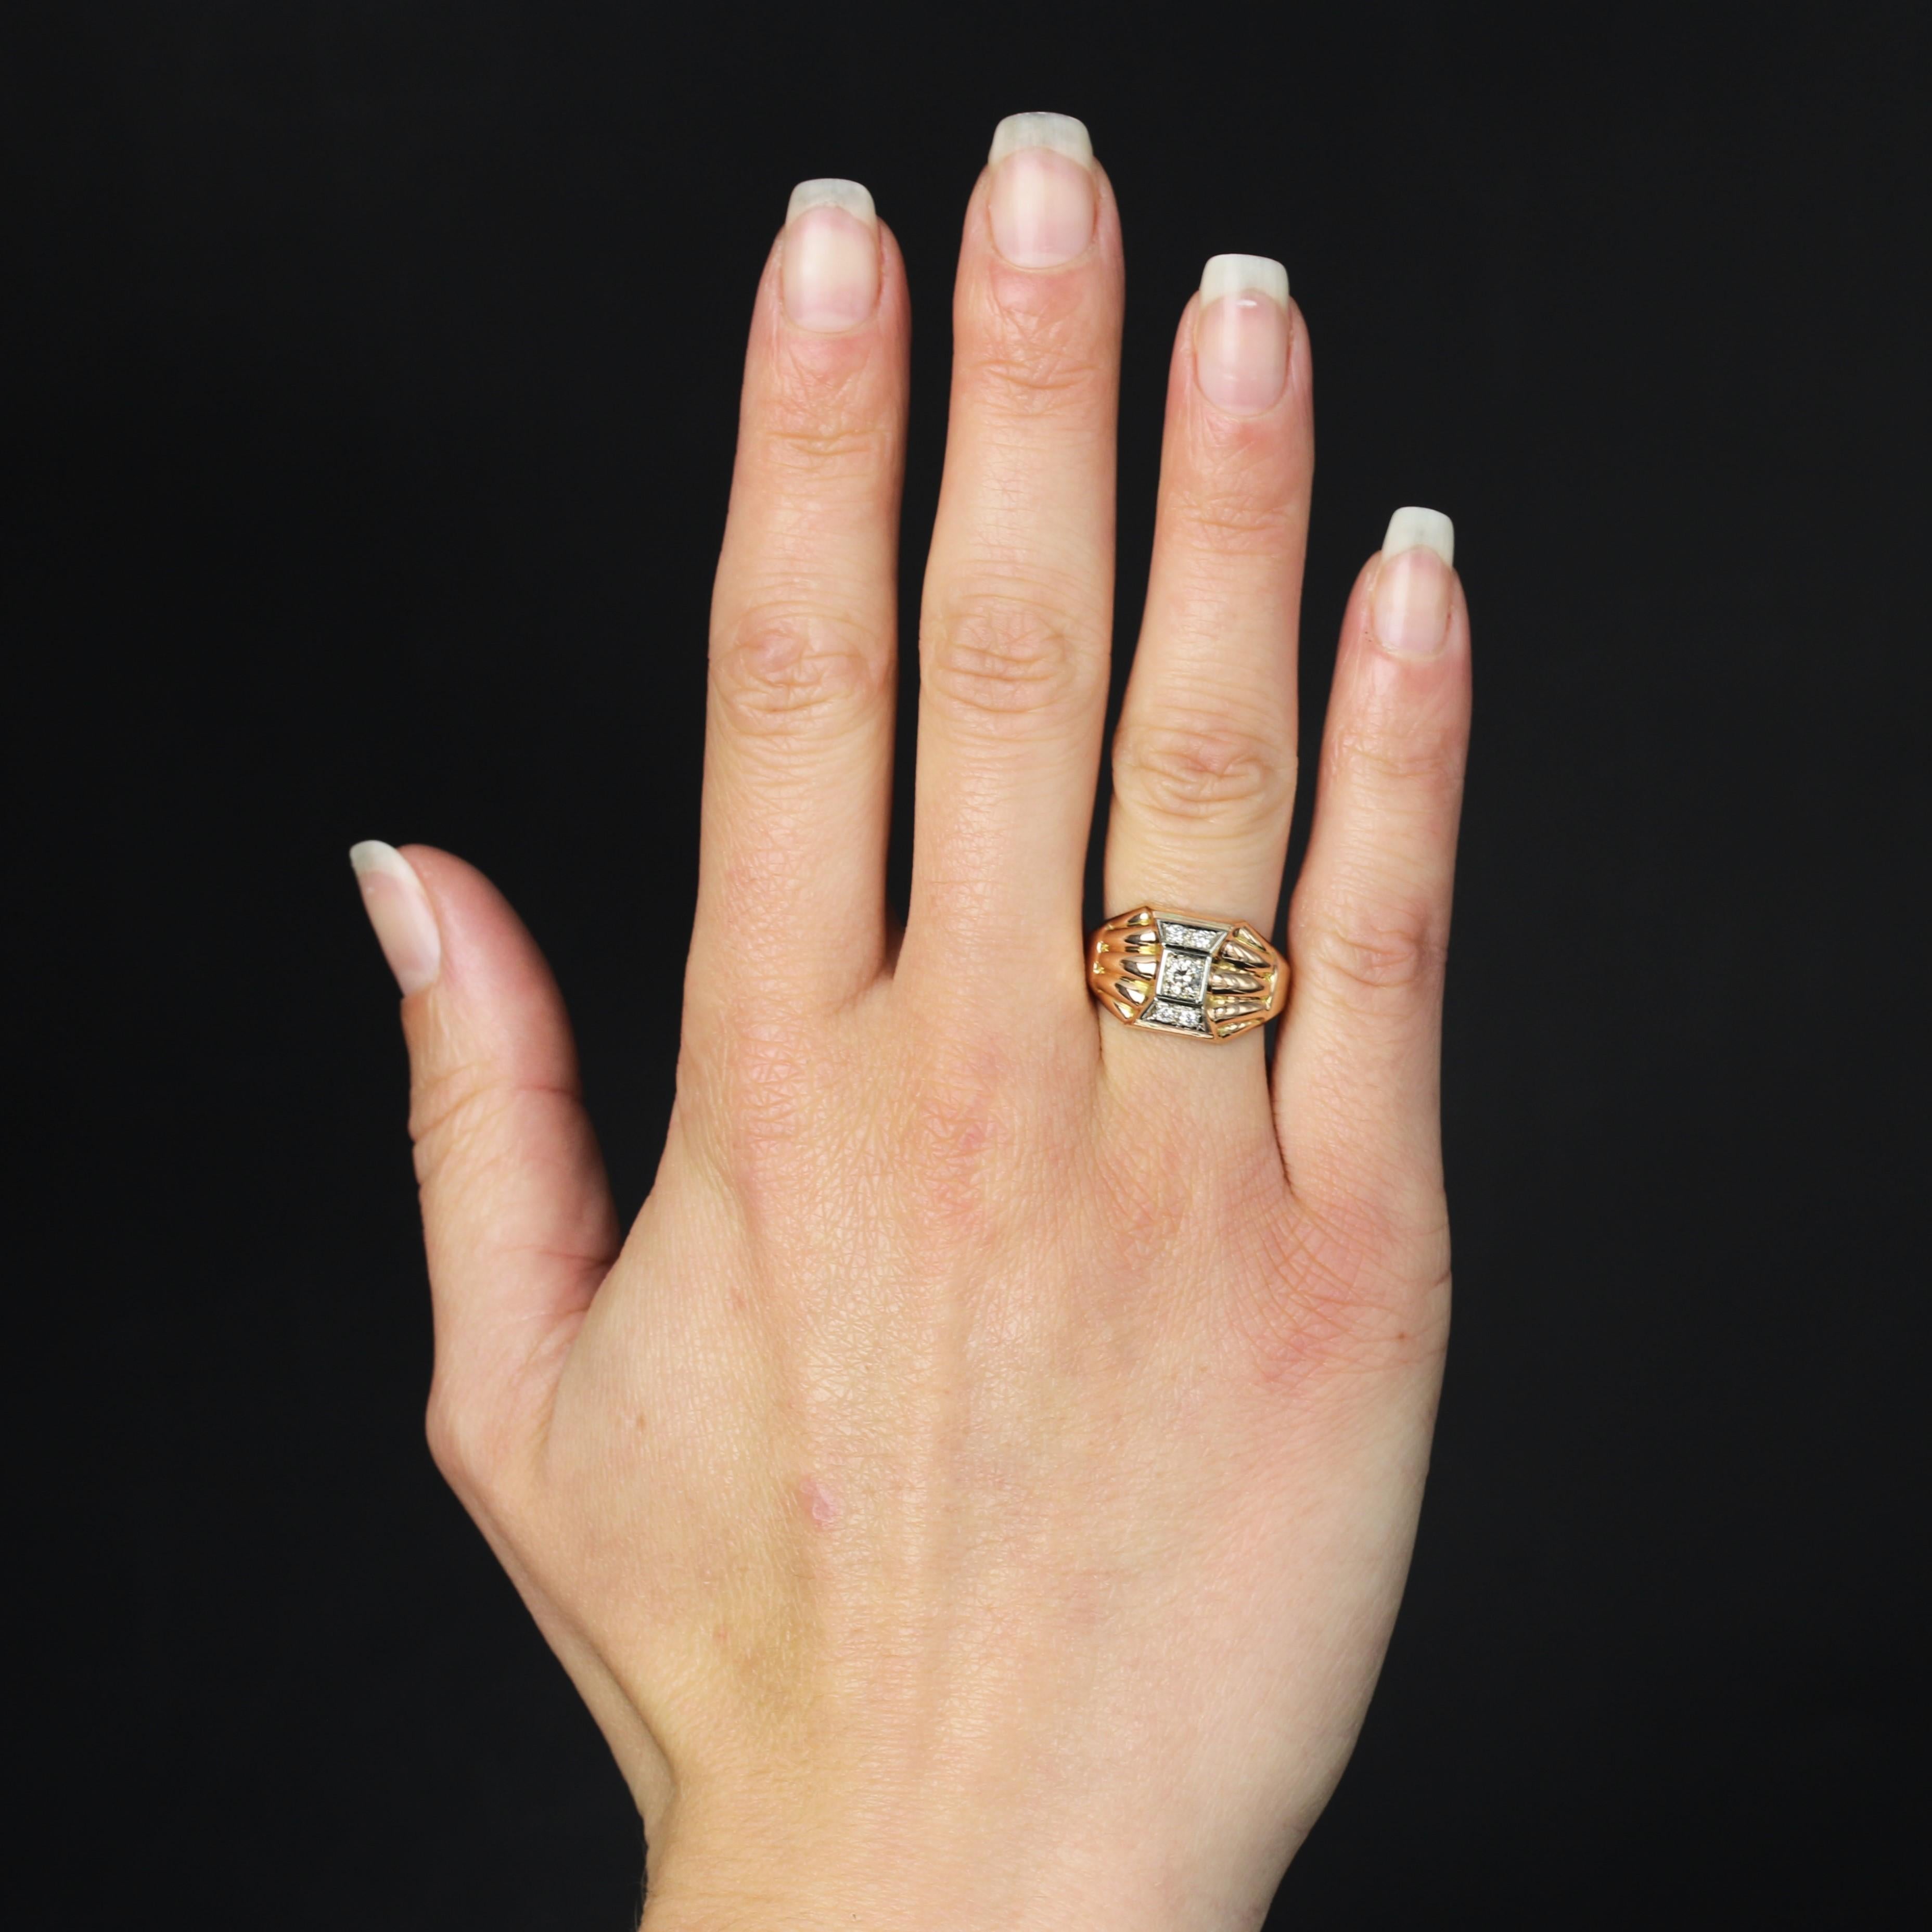 Ring aus 18 Karat Roségold, Adlerkopfpunze.
Der elegante, kuppelförmige Ring hat ein breites, rundum abgeschrägtes Band, das oben durch 2x5 Gadroon-Motive verbreitert wird. In der Mitte ist ein geometrisches Muster mit Diamanten im Brillantschliff